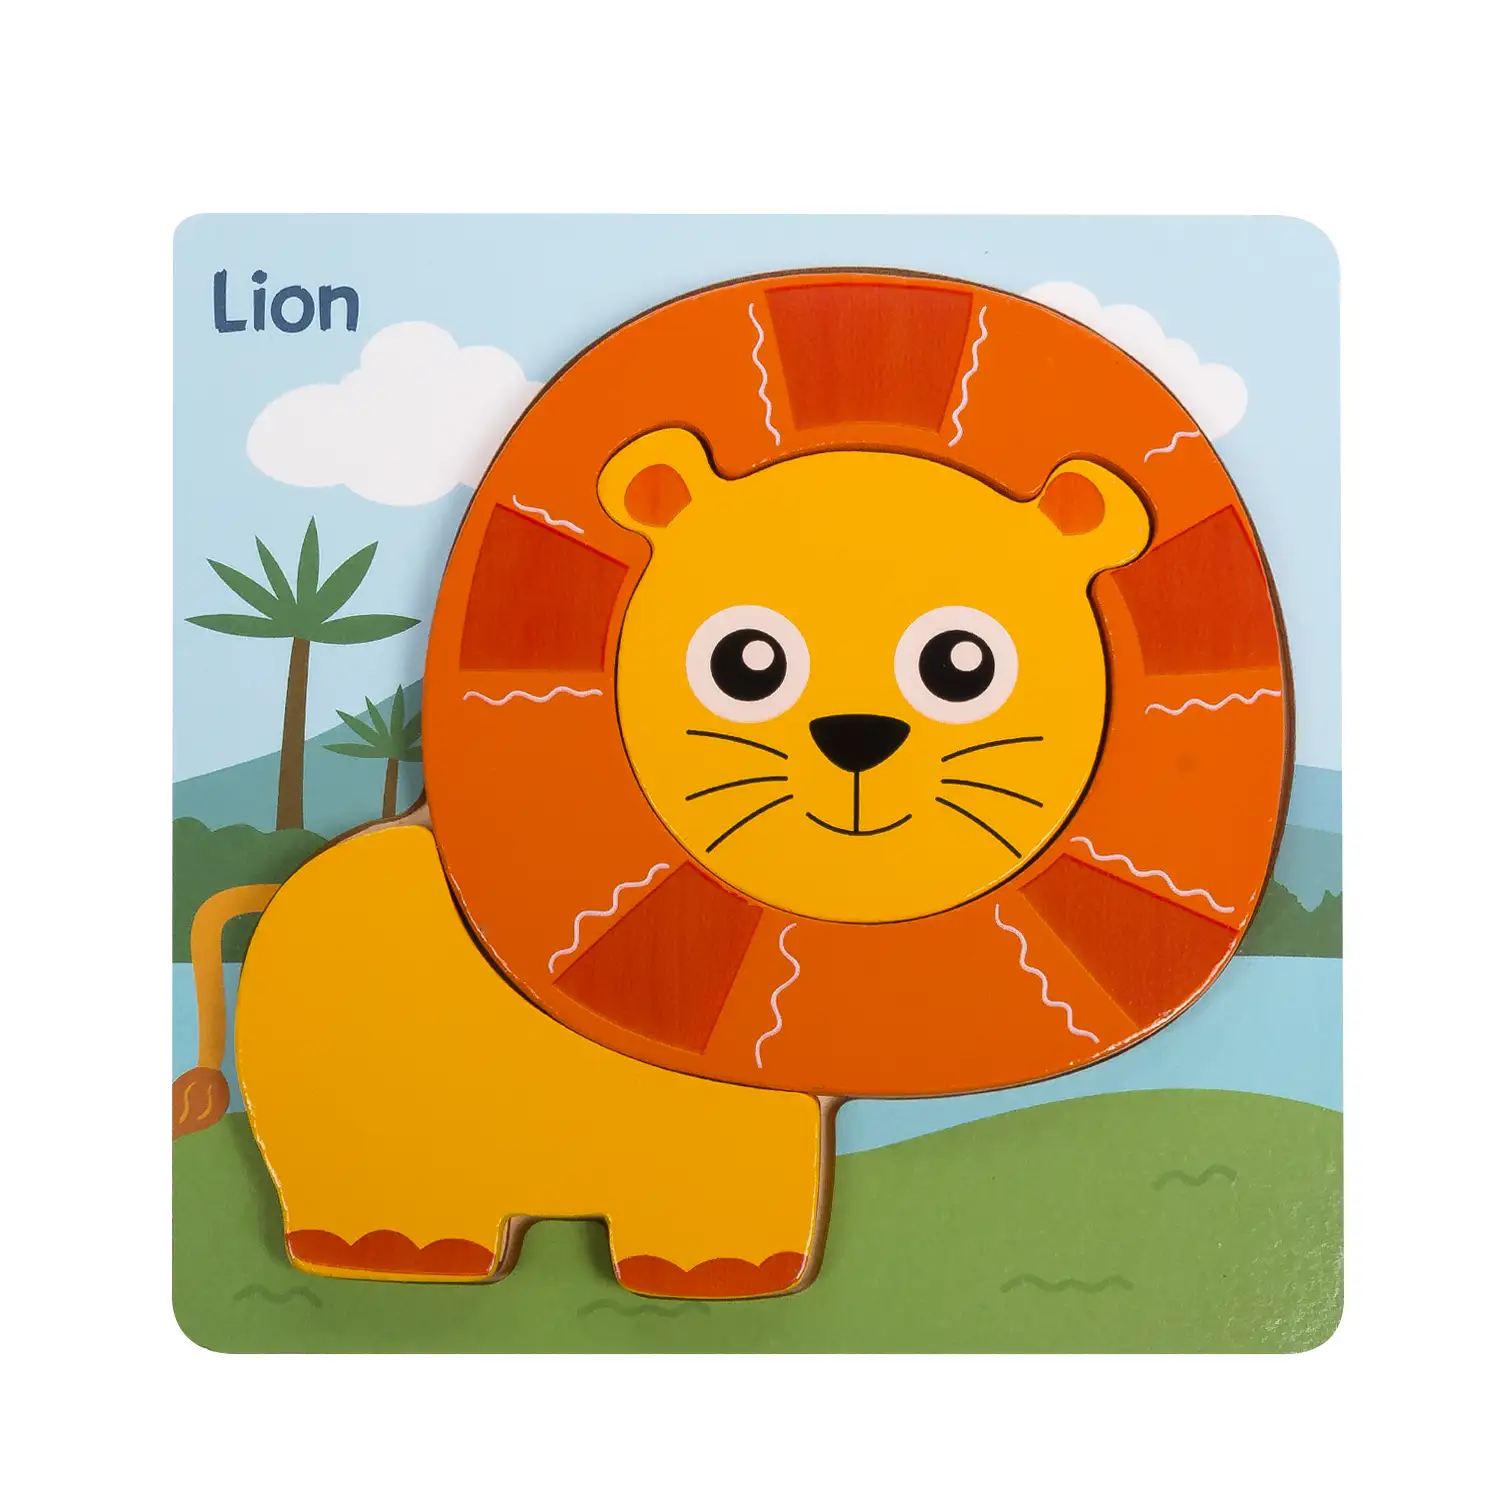 Puzle de madera para niños, de 3 piezas. Diseño león.